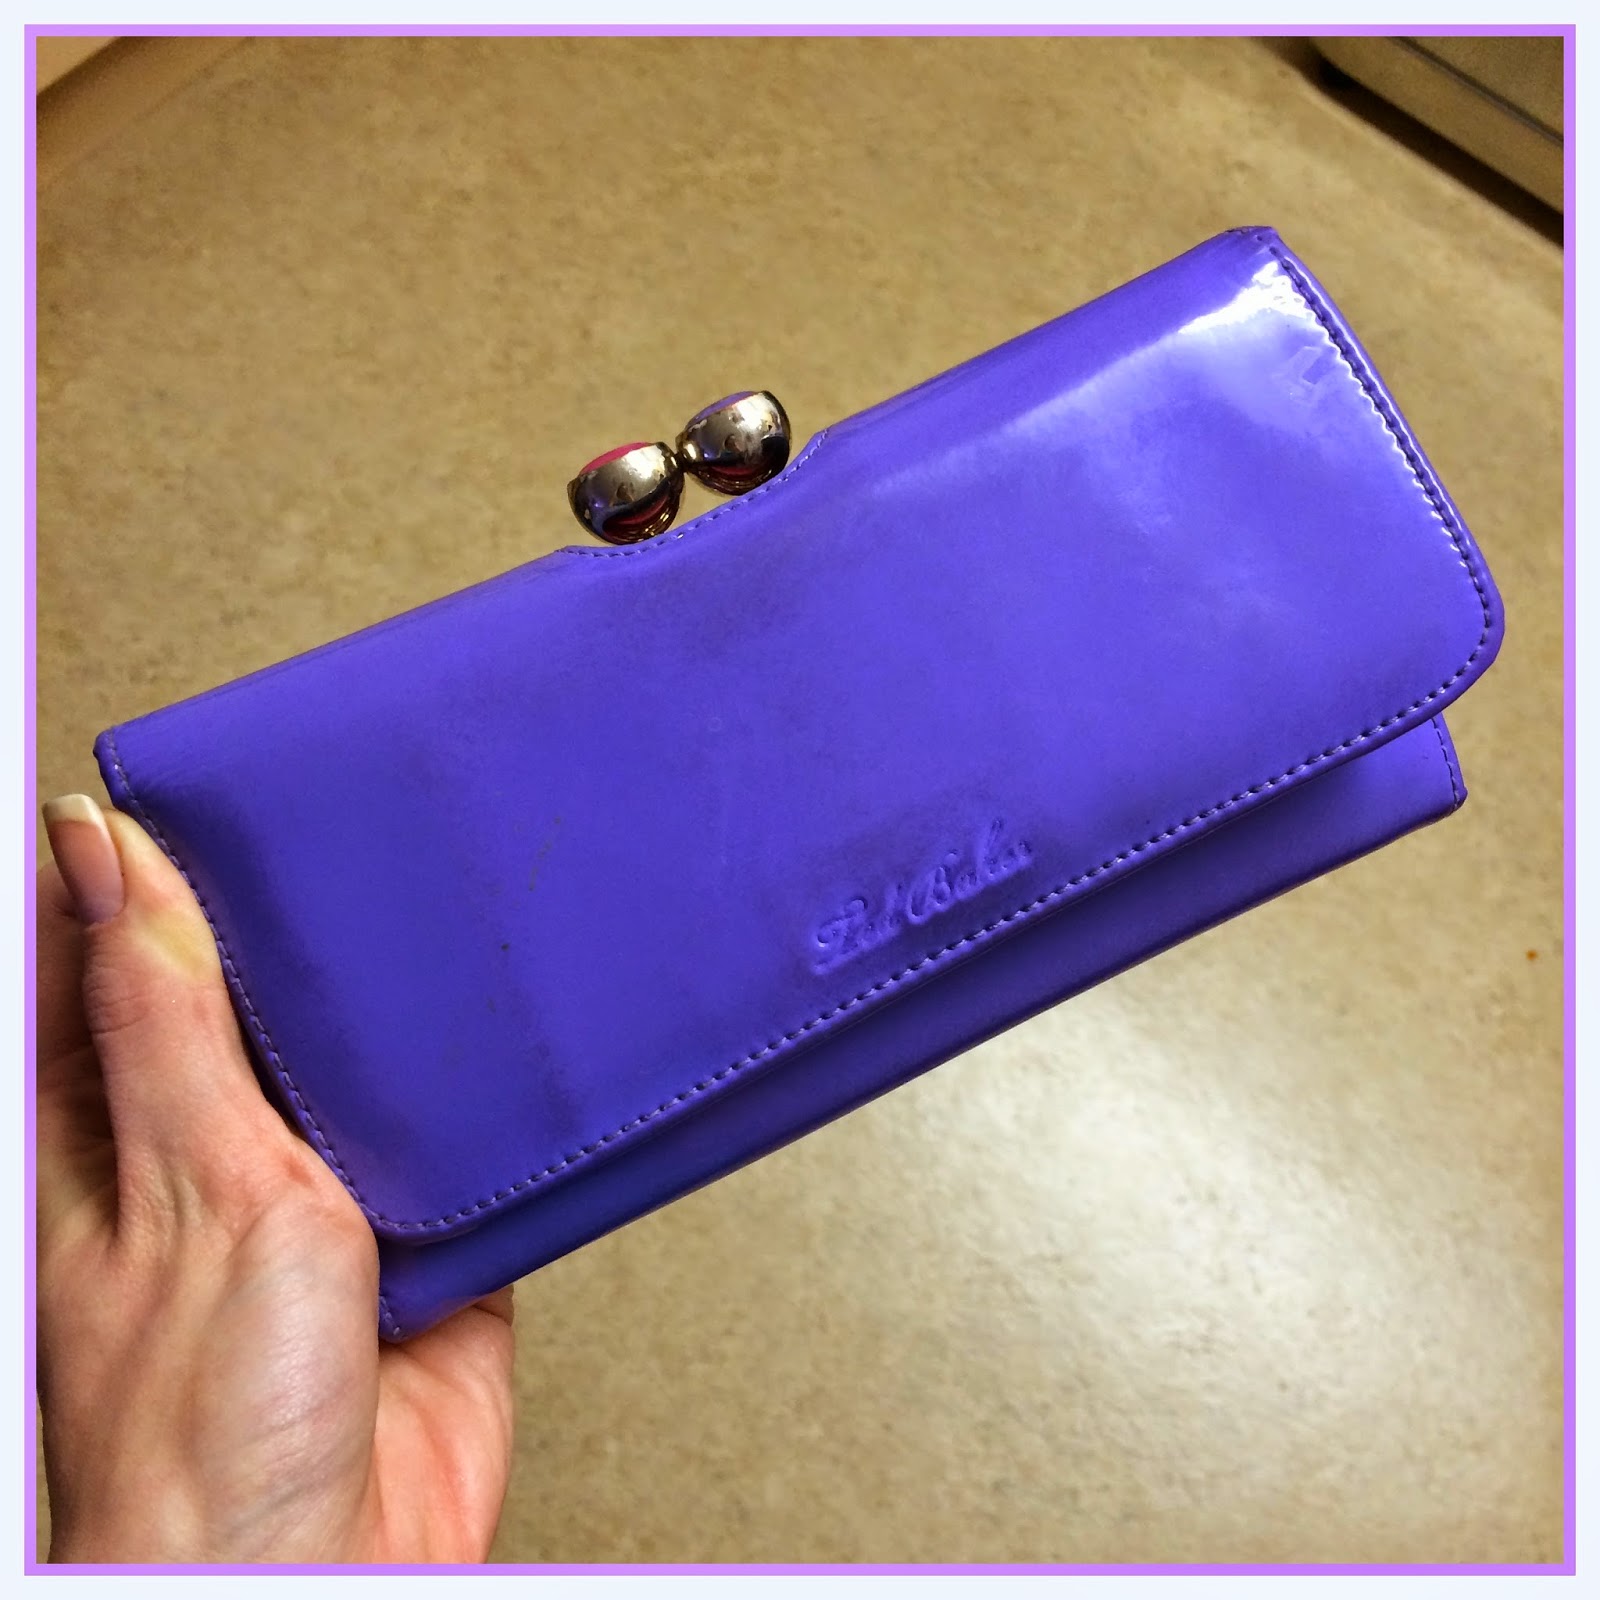 stolen-purple-ted-baker-purse